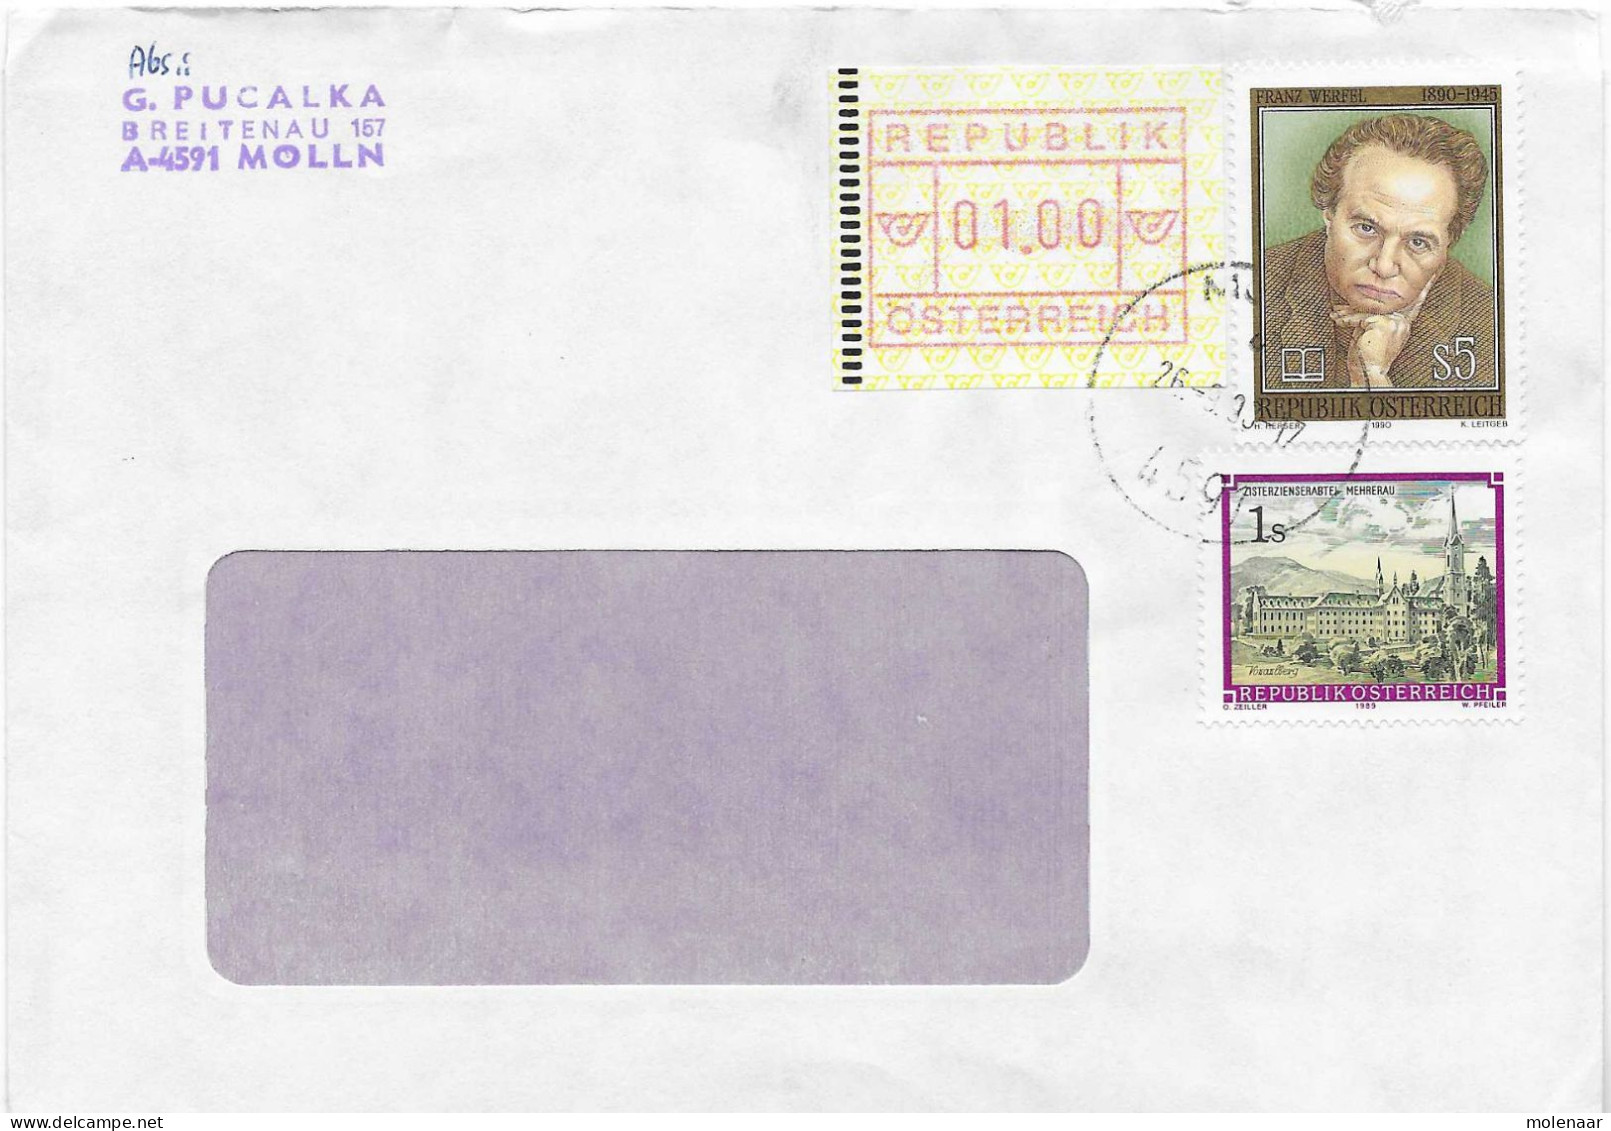 Postzegels > Europa > Oostenrijk > 1945-.... 2de Republiek > 1981-1990>brief Uit 1990 Met 3 Postzegels (17764) - Briefe U. Dokumente